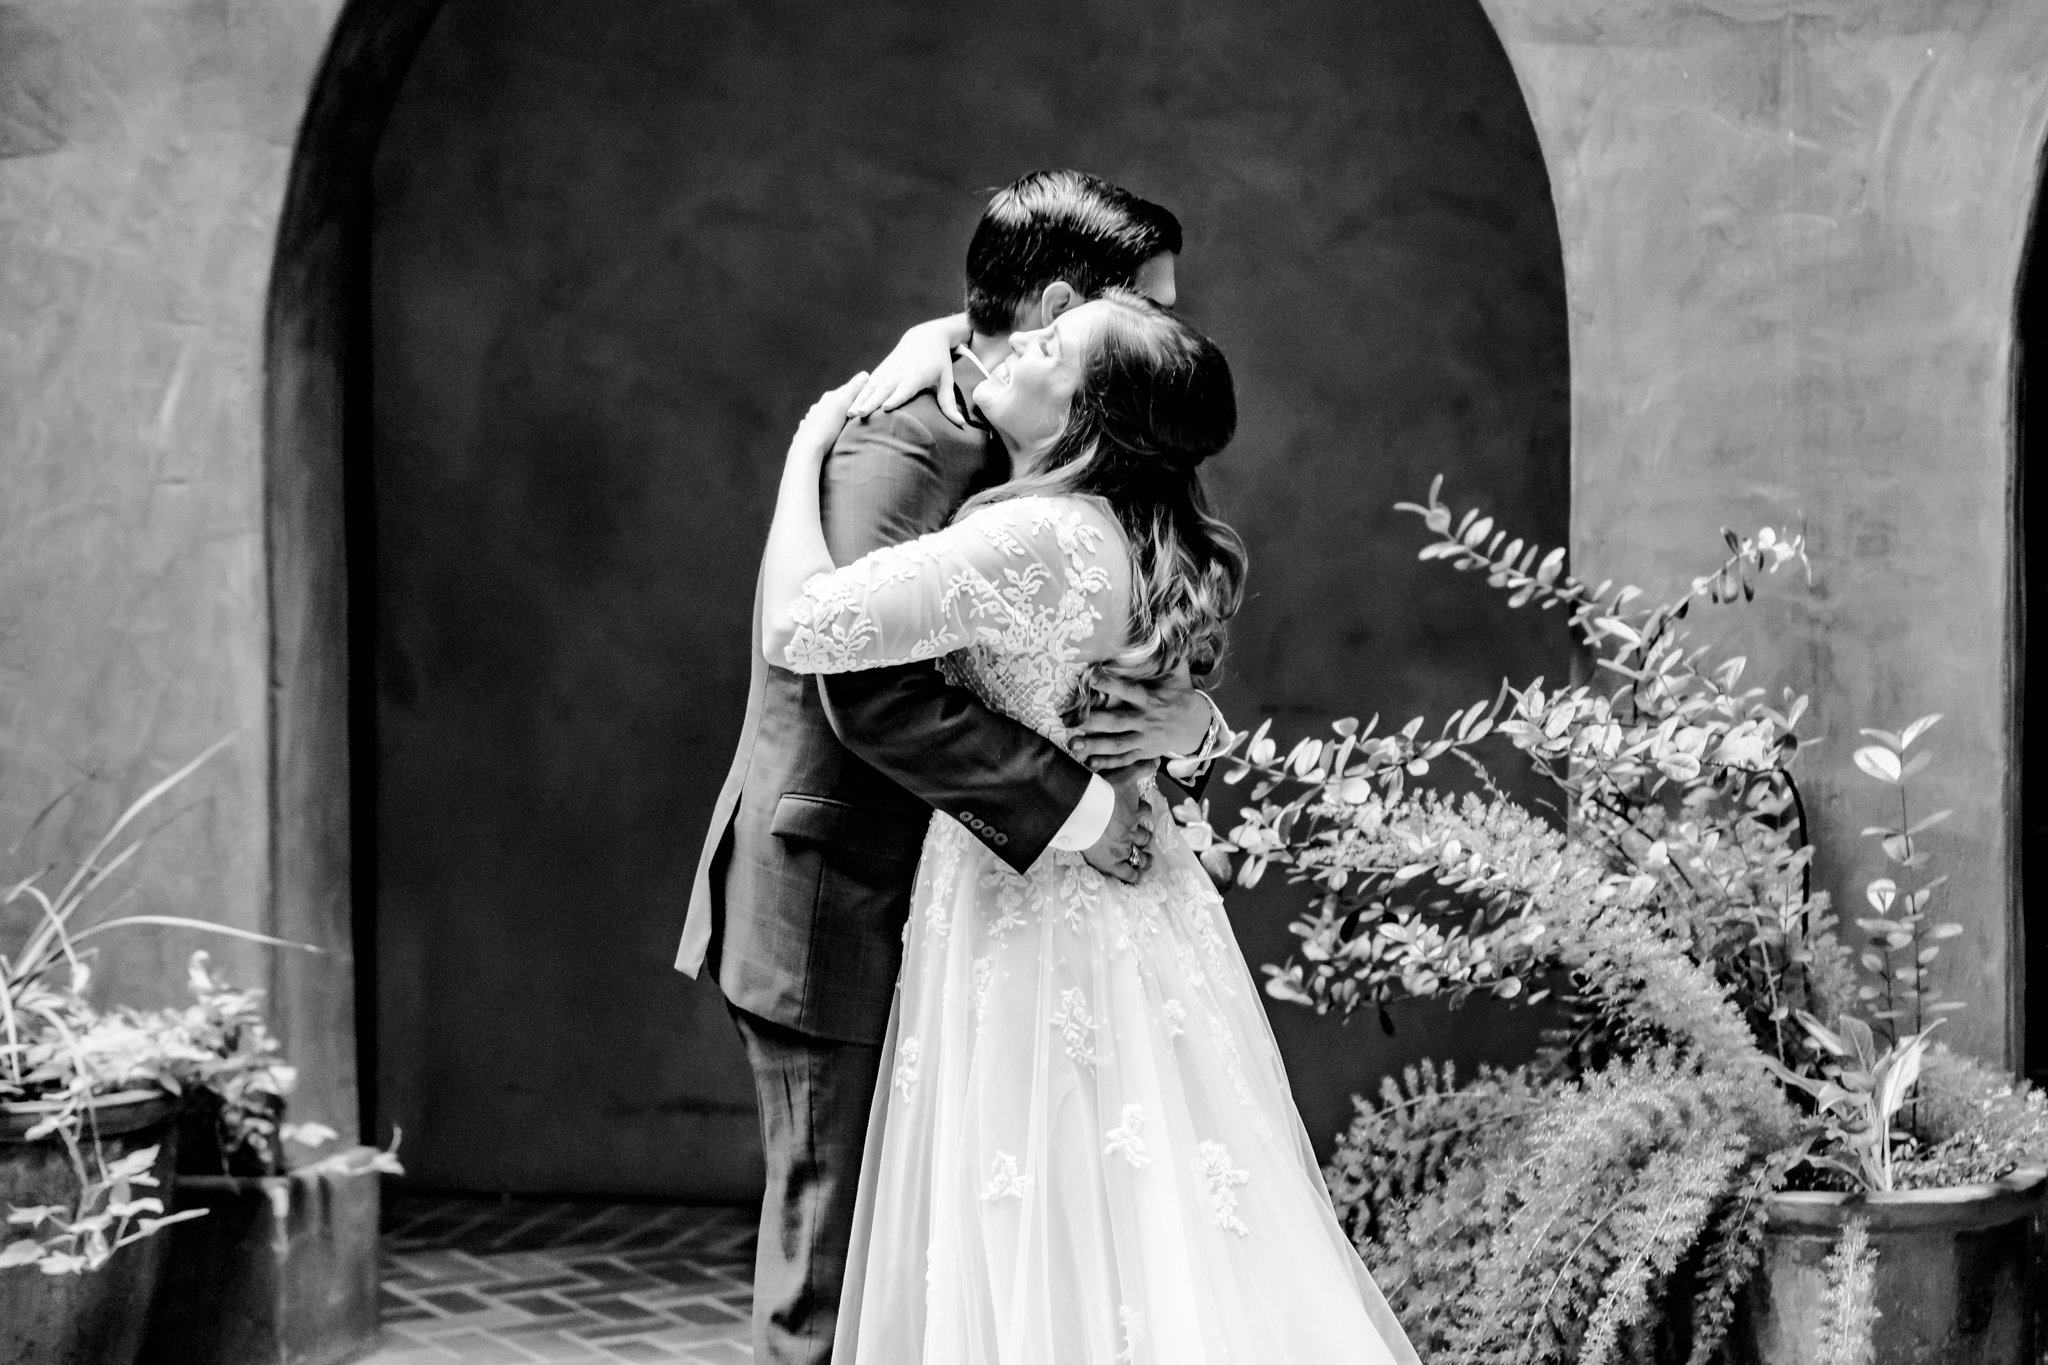 A Jewel Tone Wedding at San Antonio Museum of Art in San Antonio, TX by Dawn Elizabeth Studios, San Antonio Wedding Photographer